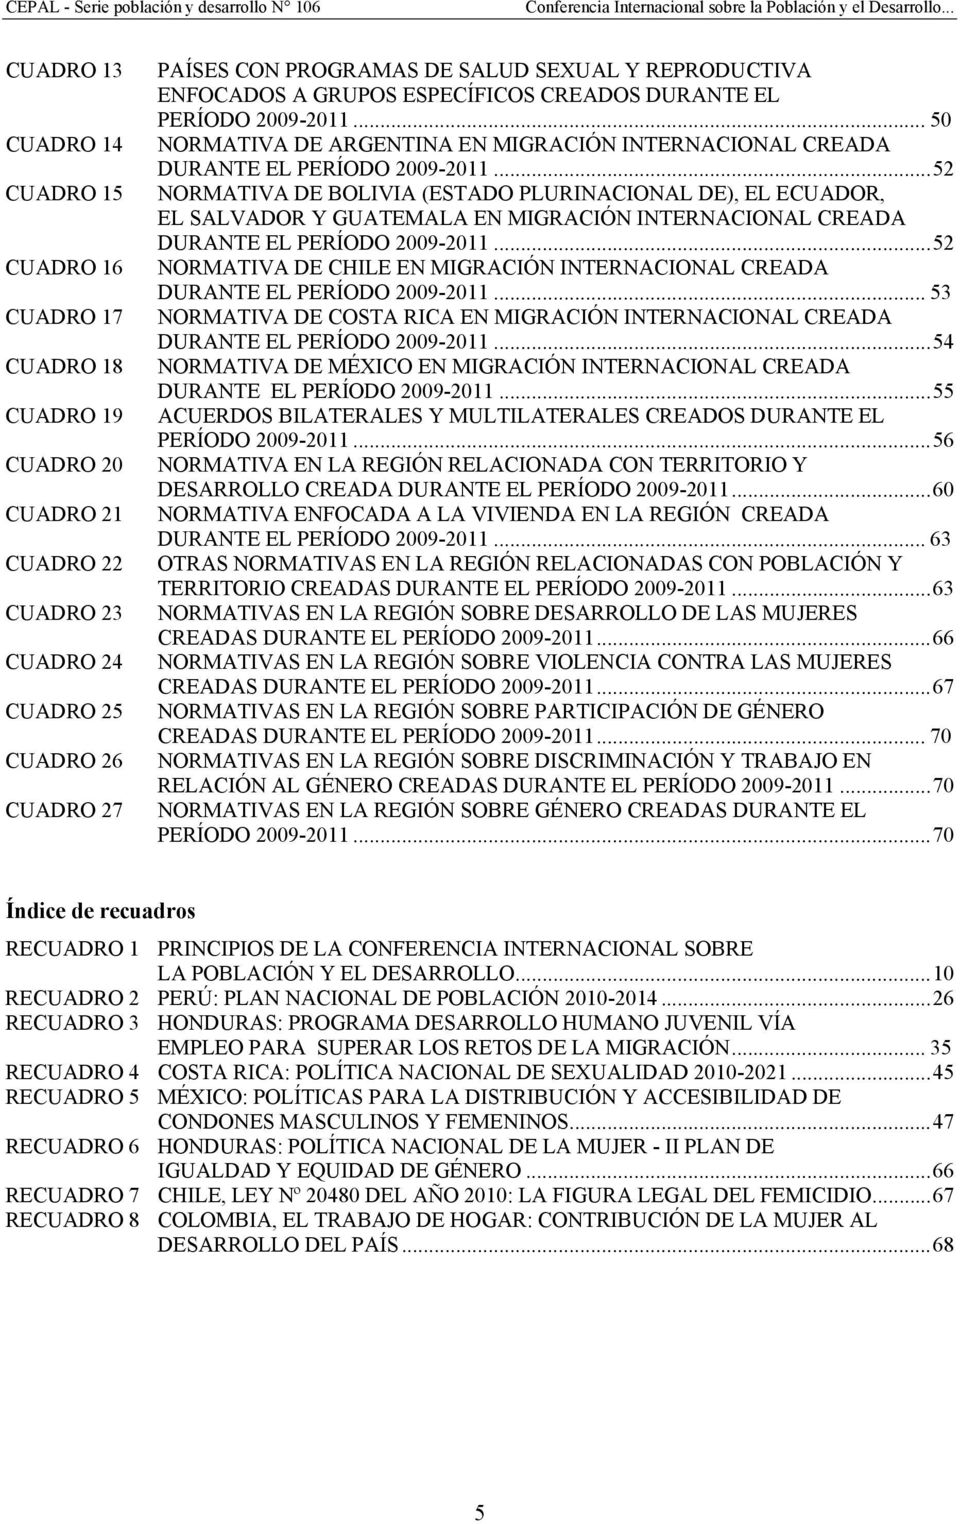 .. 52 NORMATIVA DE BOLIVIA (ESTADO PLURINACIONAL DE), EL ECUADOR, EL SALVADOR Y GUATEMALA EN MIGRACIÓN INTERNACIONAL CREADA DURANTE EL PERÍODO 2009-2011.